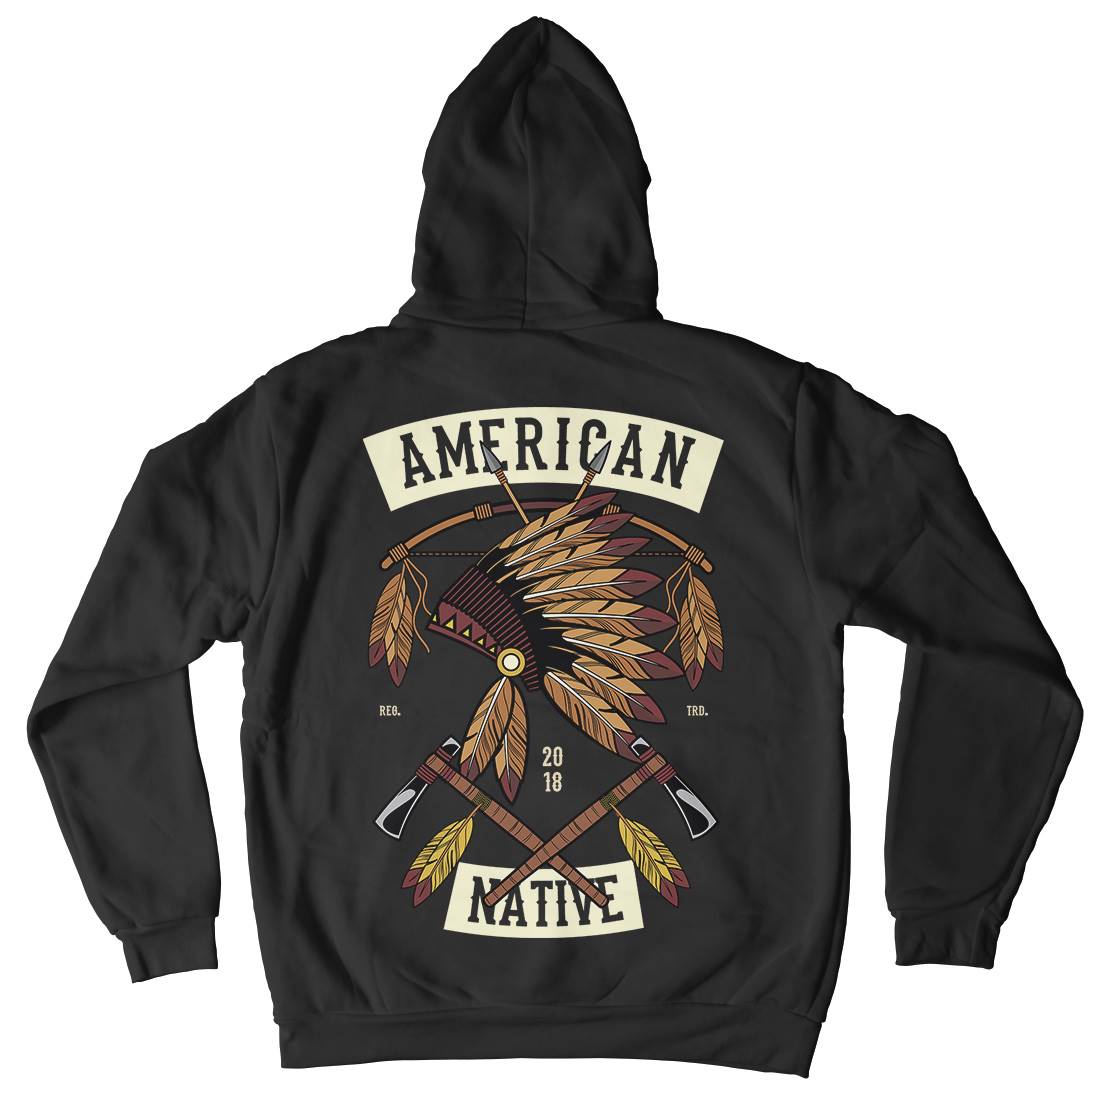 American Native Kids Crew Neck Hoodie American C303